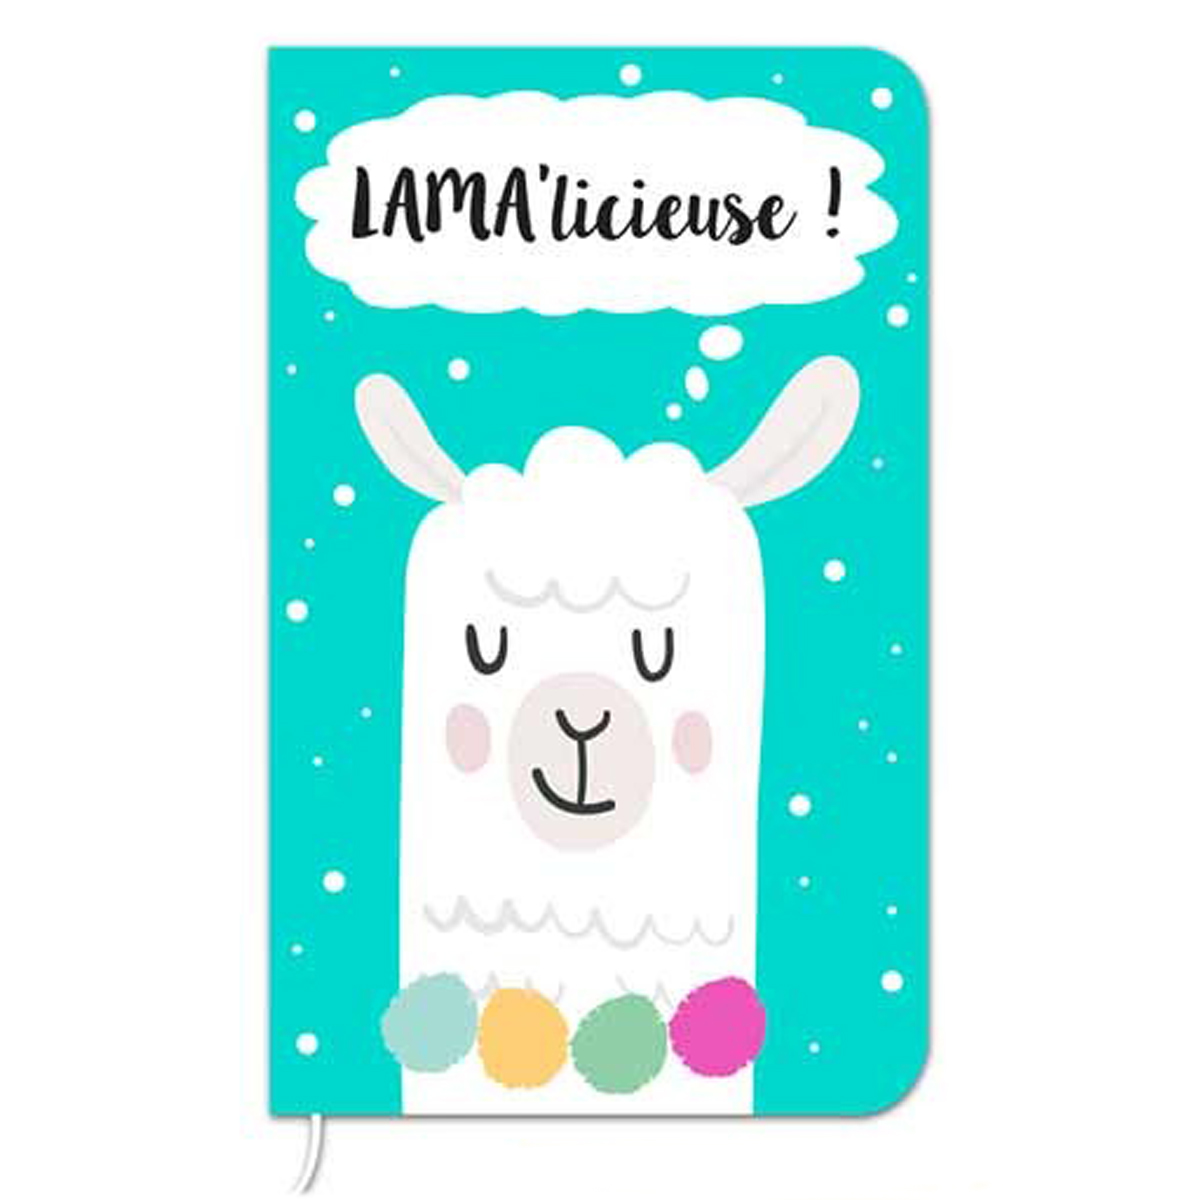 Carnet de notes \'Lama Mania\' turquoise (Lama\' licieuse) - 145x9 cm (72 pages) - [Q0874]